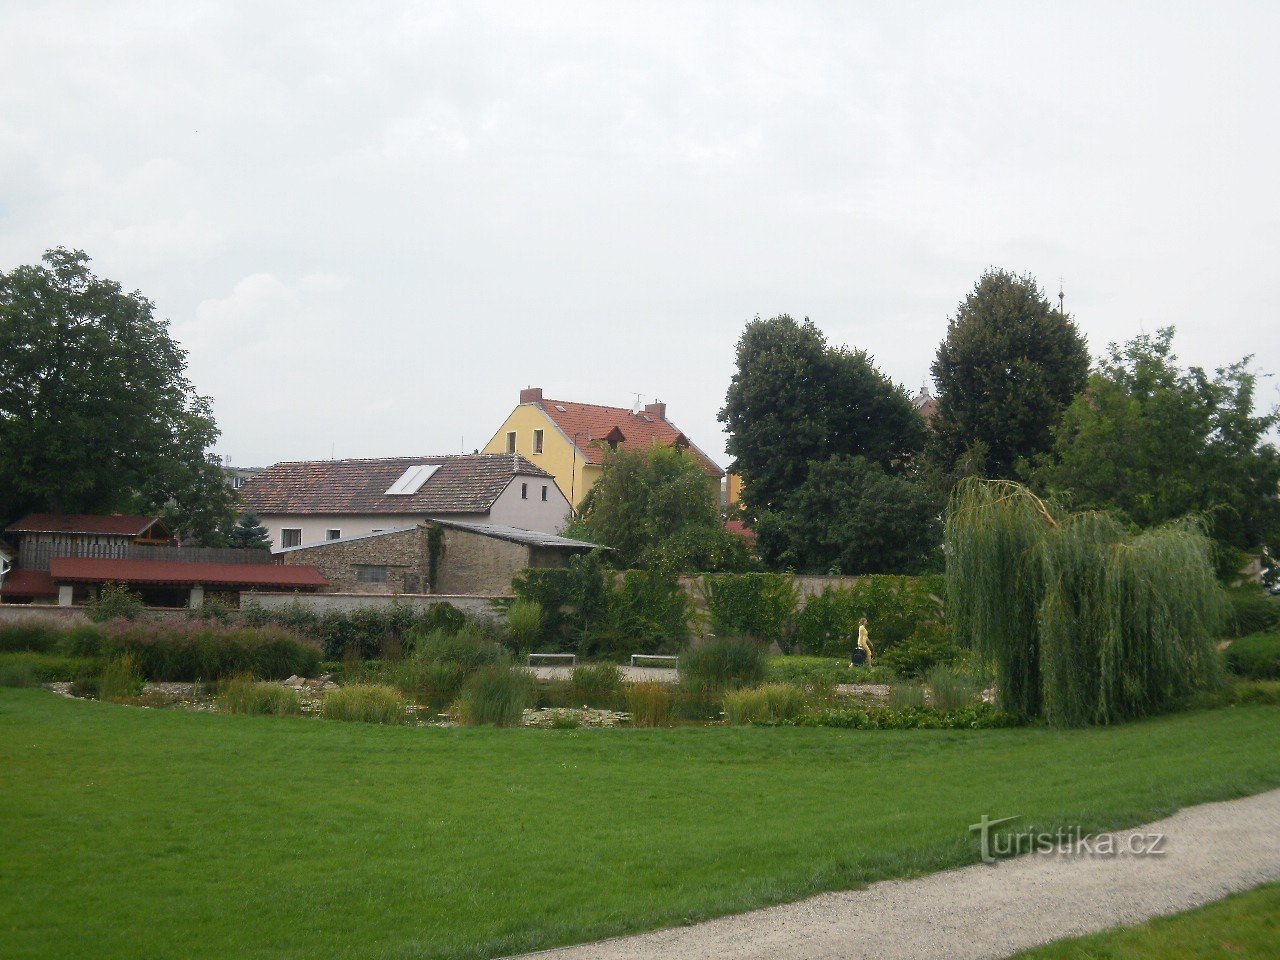 Litoměřice ist eine Stadt am Zusammenfluss von Elbe und Eger